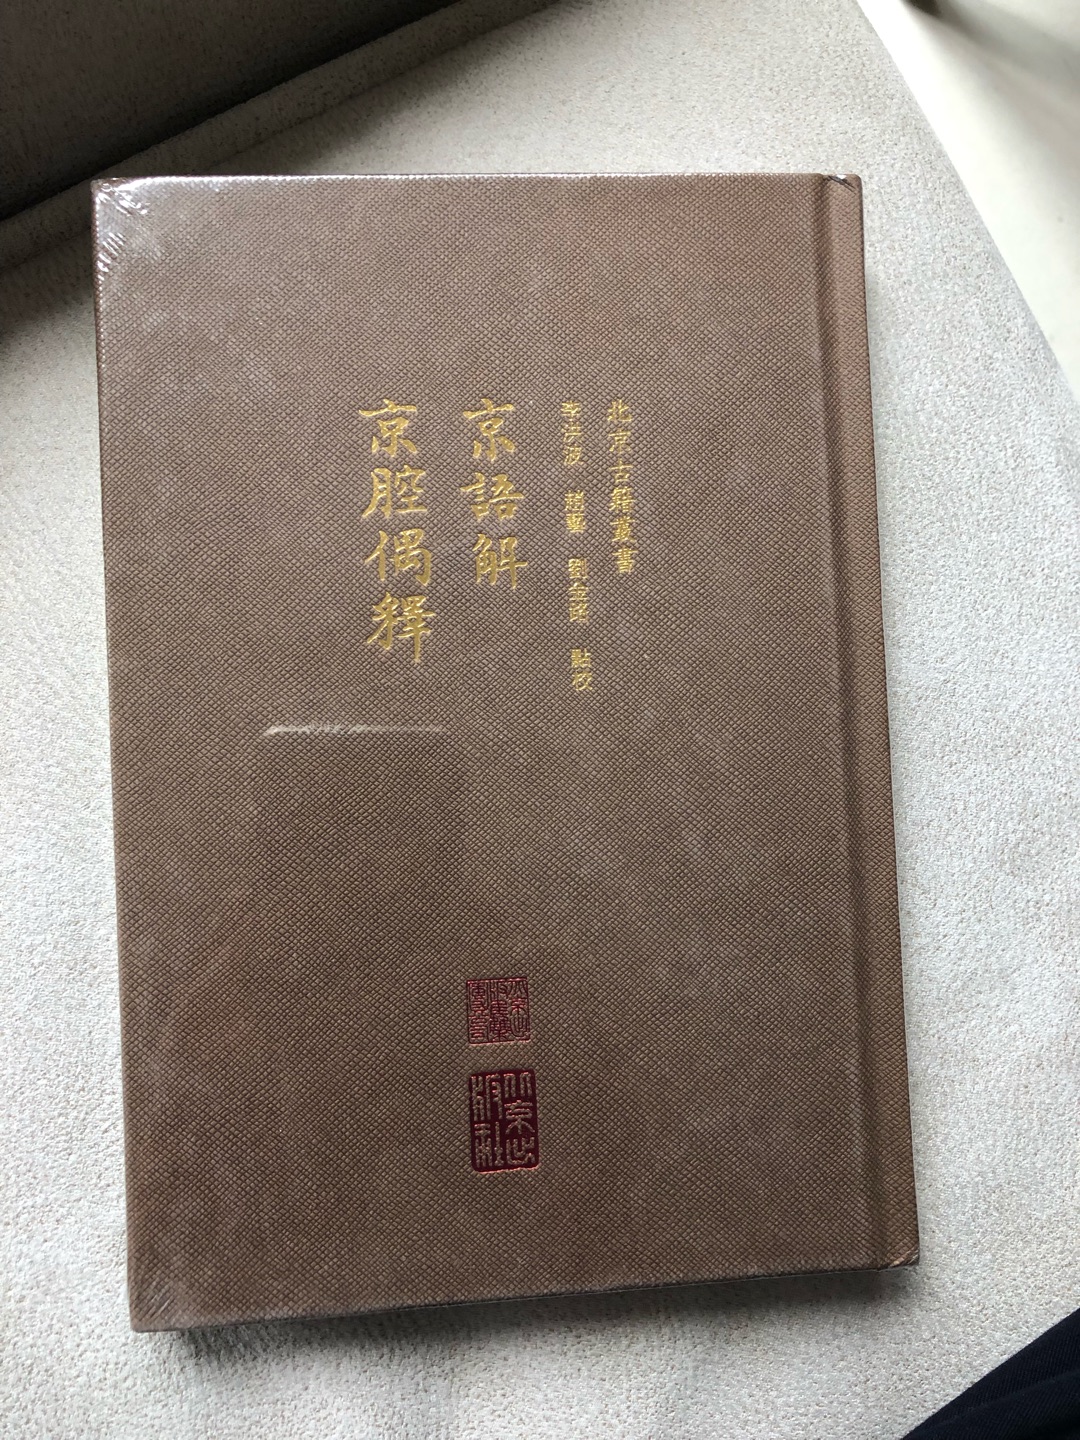 广西师大出版社出品。据说这是一部全新视角的中国历史著作，趁活动拿下。